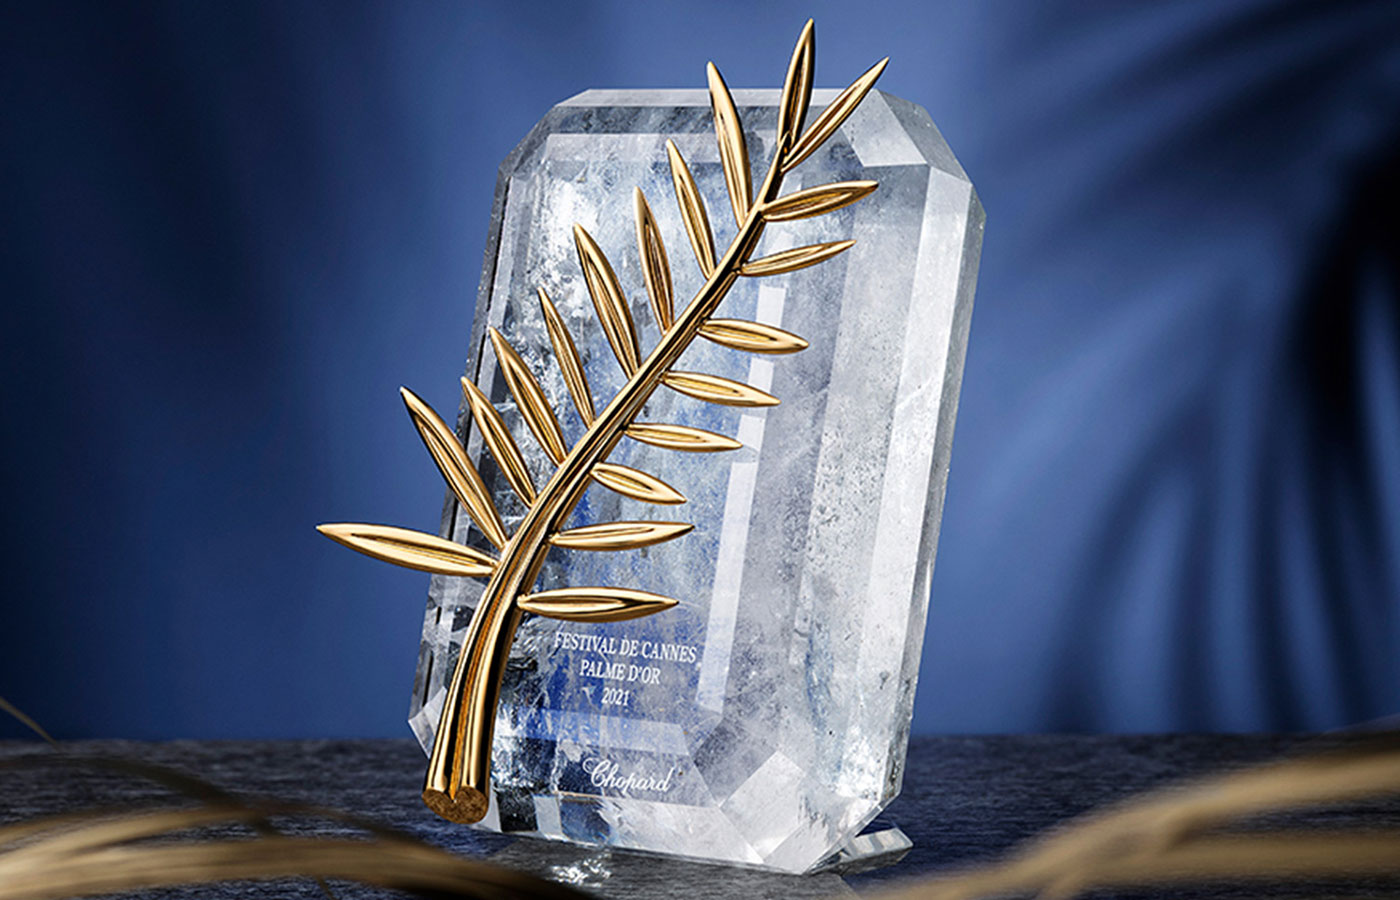 Cúp Cành cọ vàng của Chopard, giải thưởng vô giá từ liên hoan phim Cannes